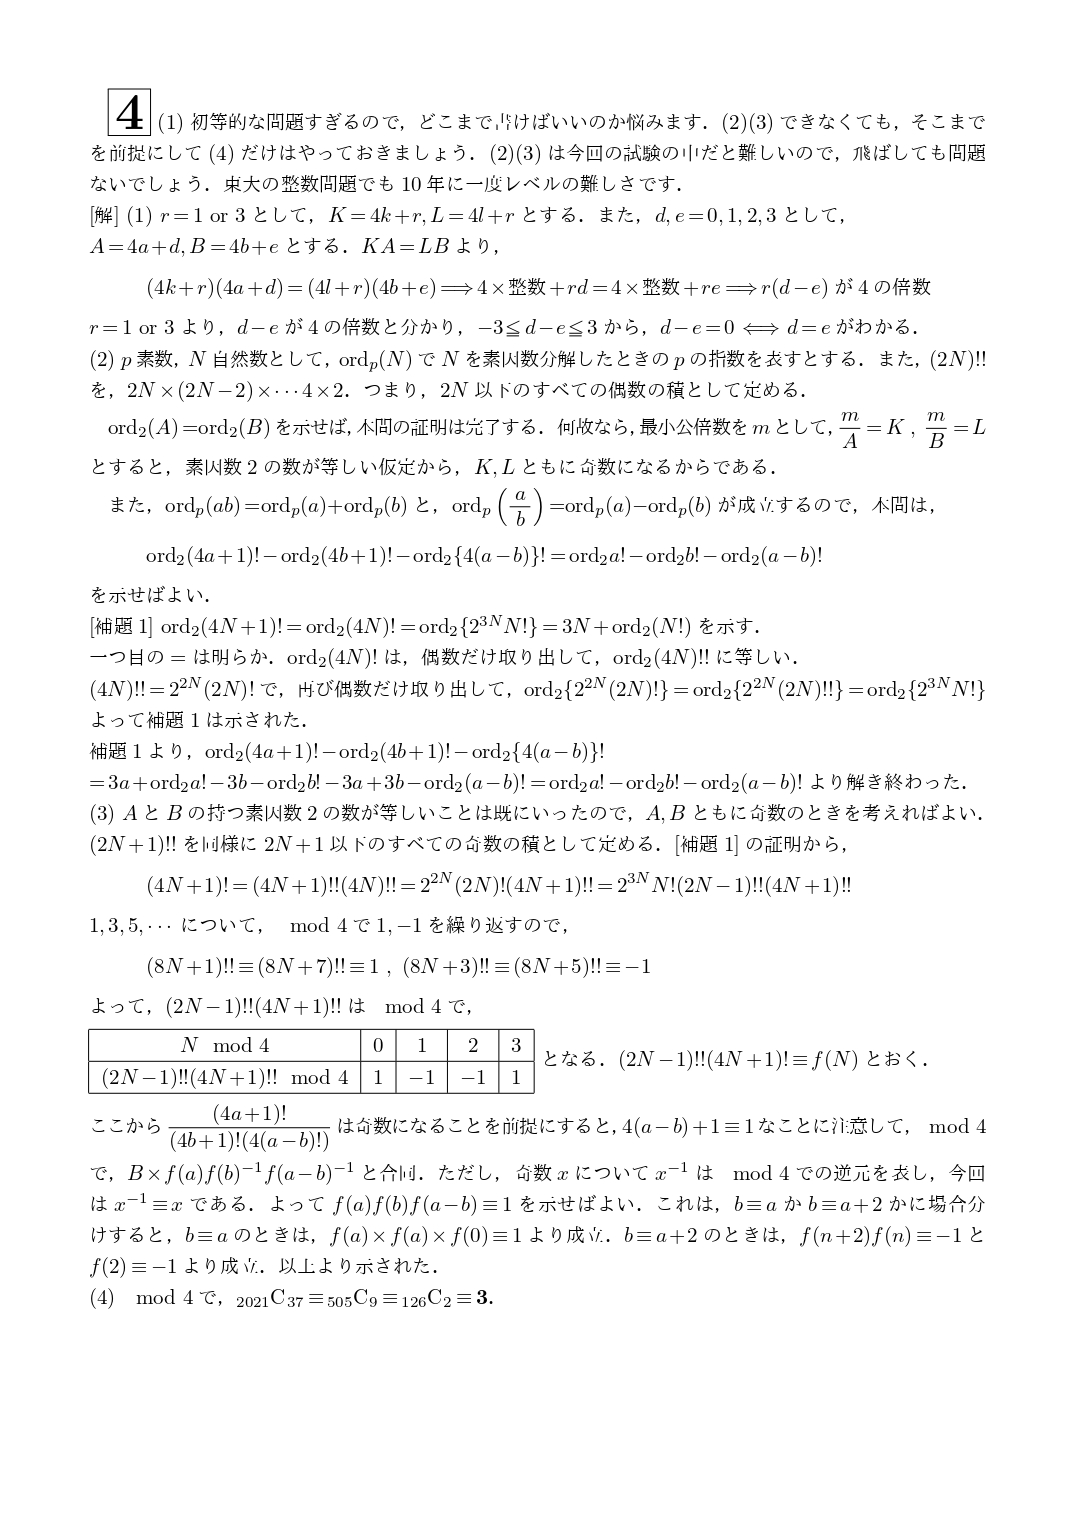 2021年2月25日 東京大学(理系)数学 解答速報